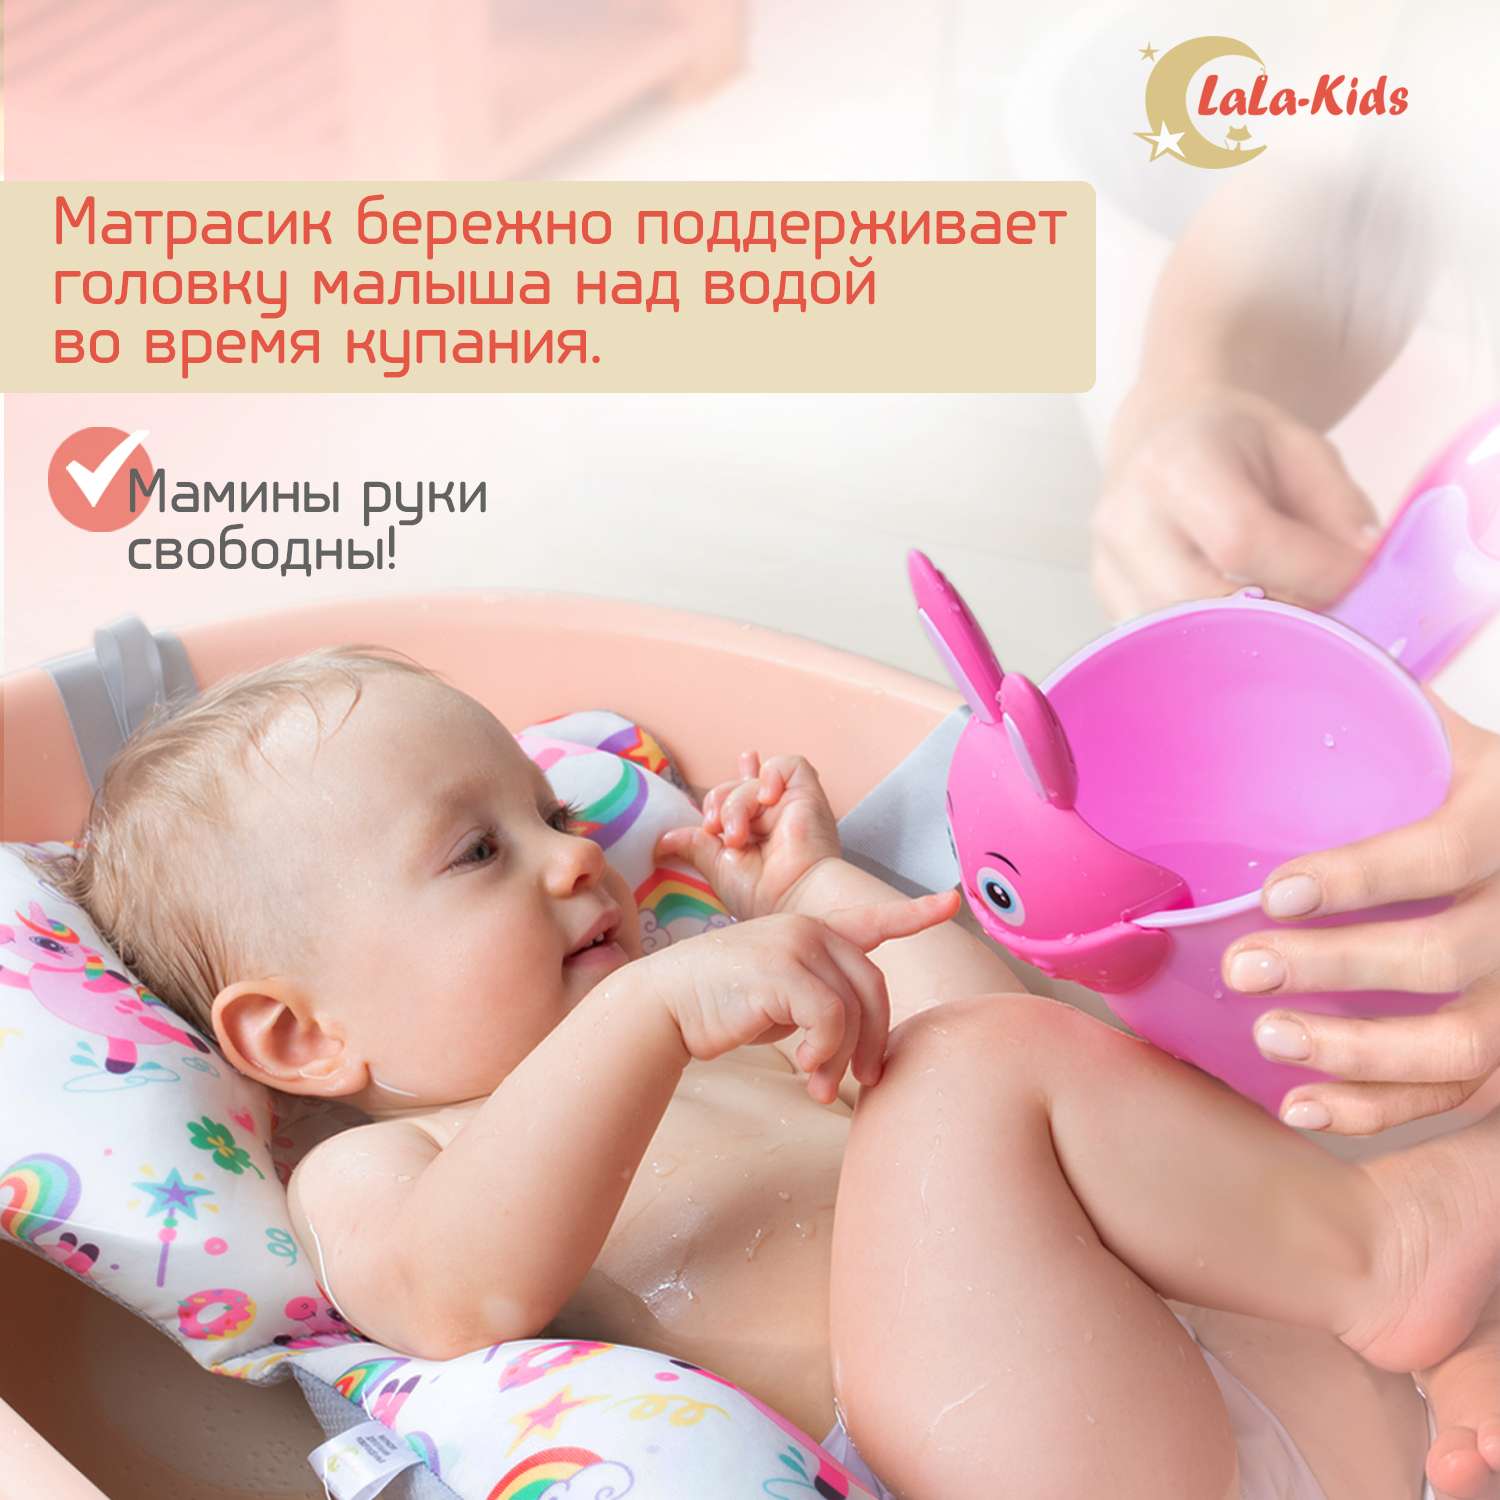 Детская ванночка LaLa-Kids складная с матрасиком для купания новорожденных - фото 4